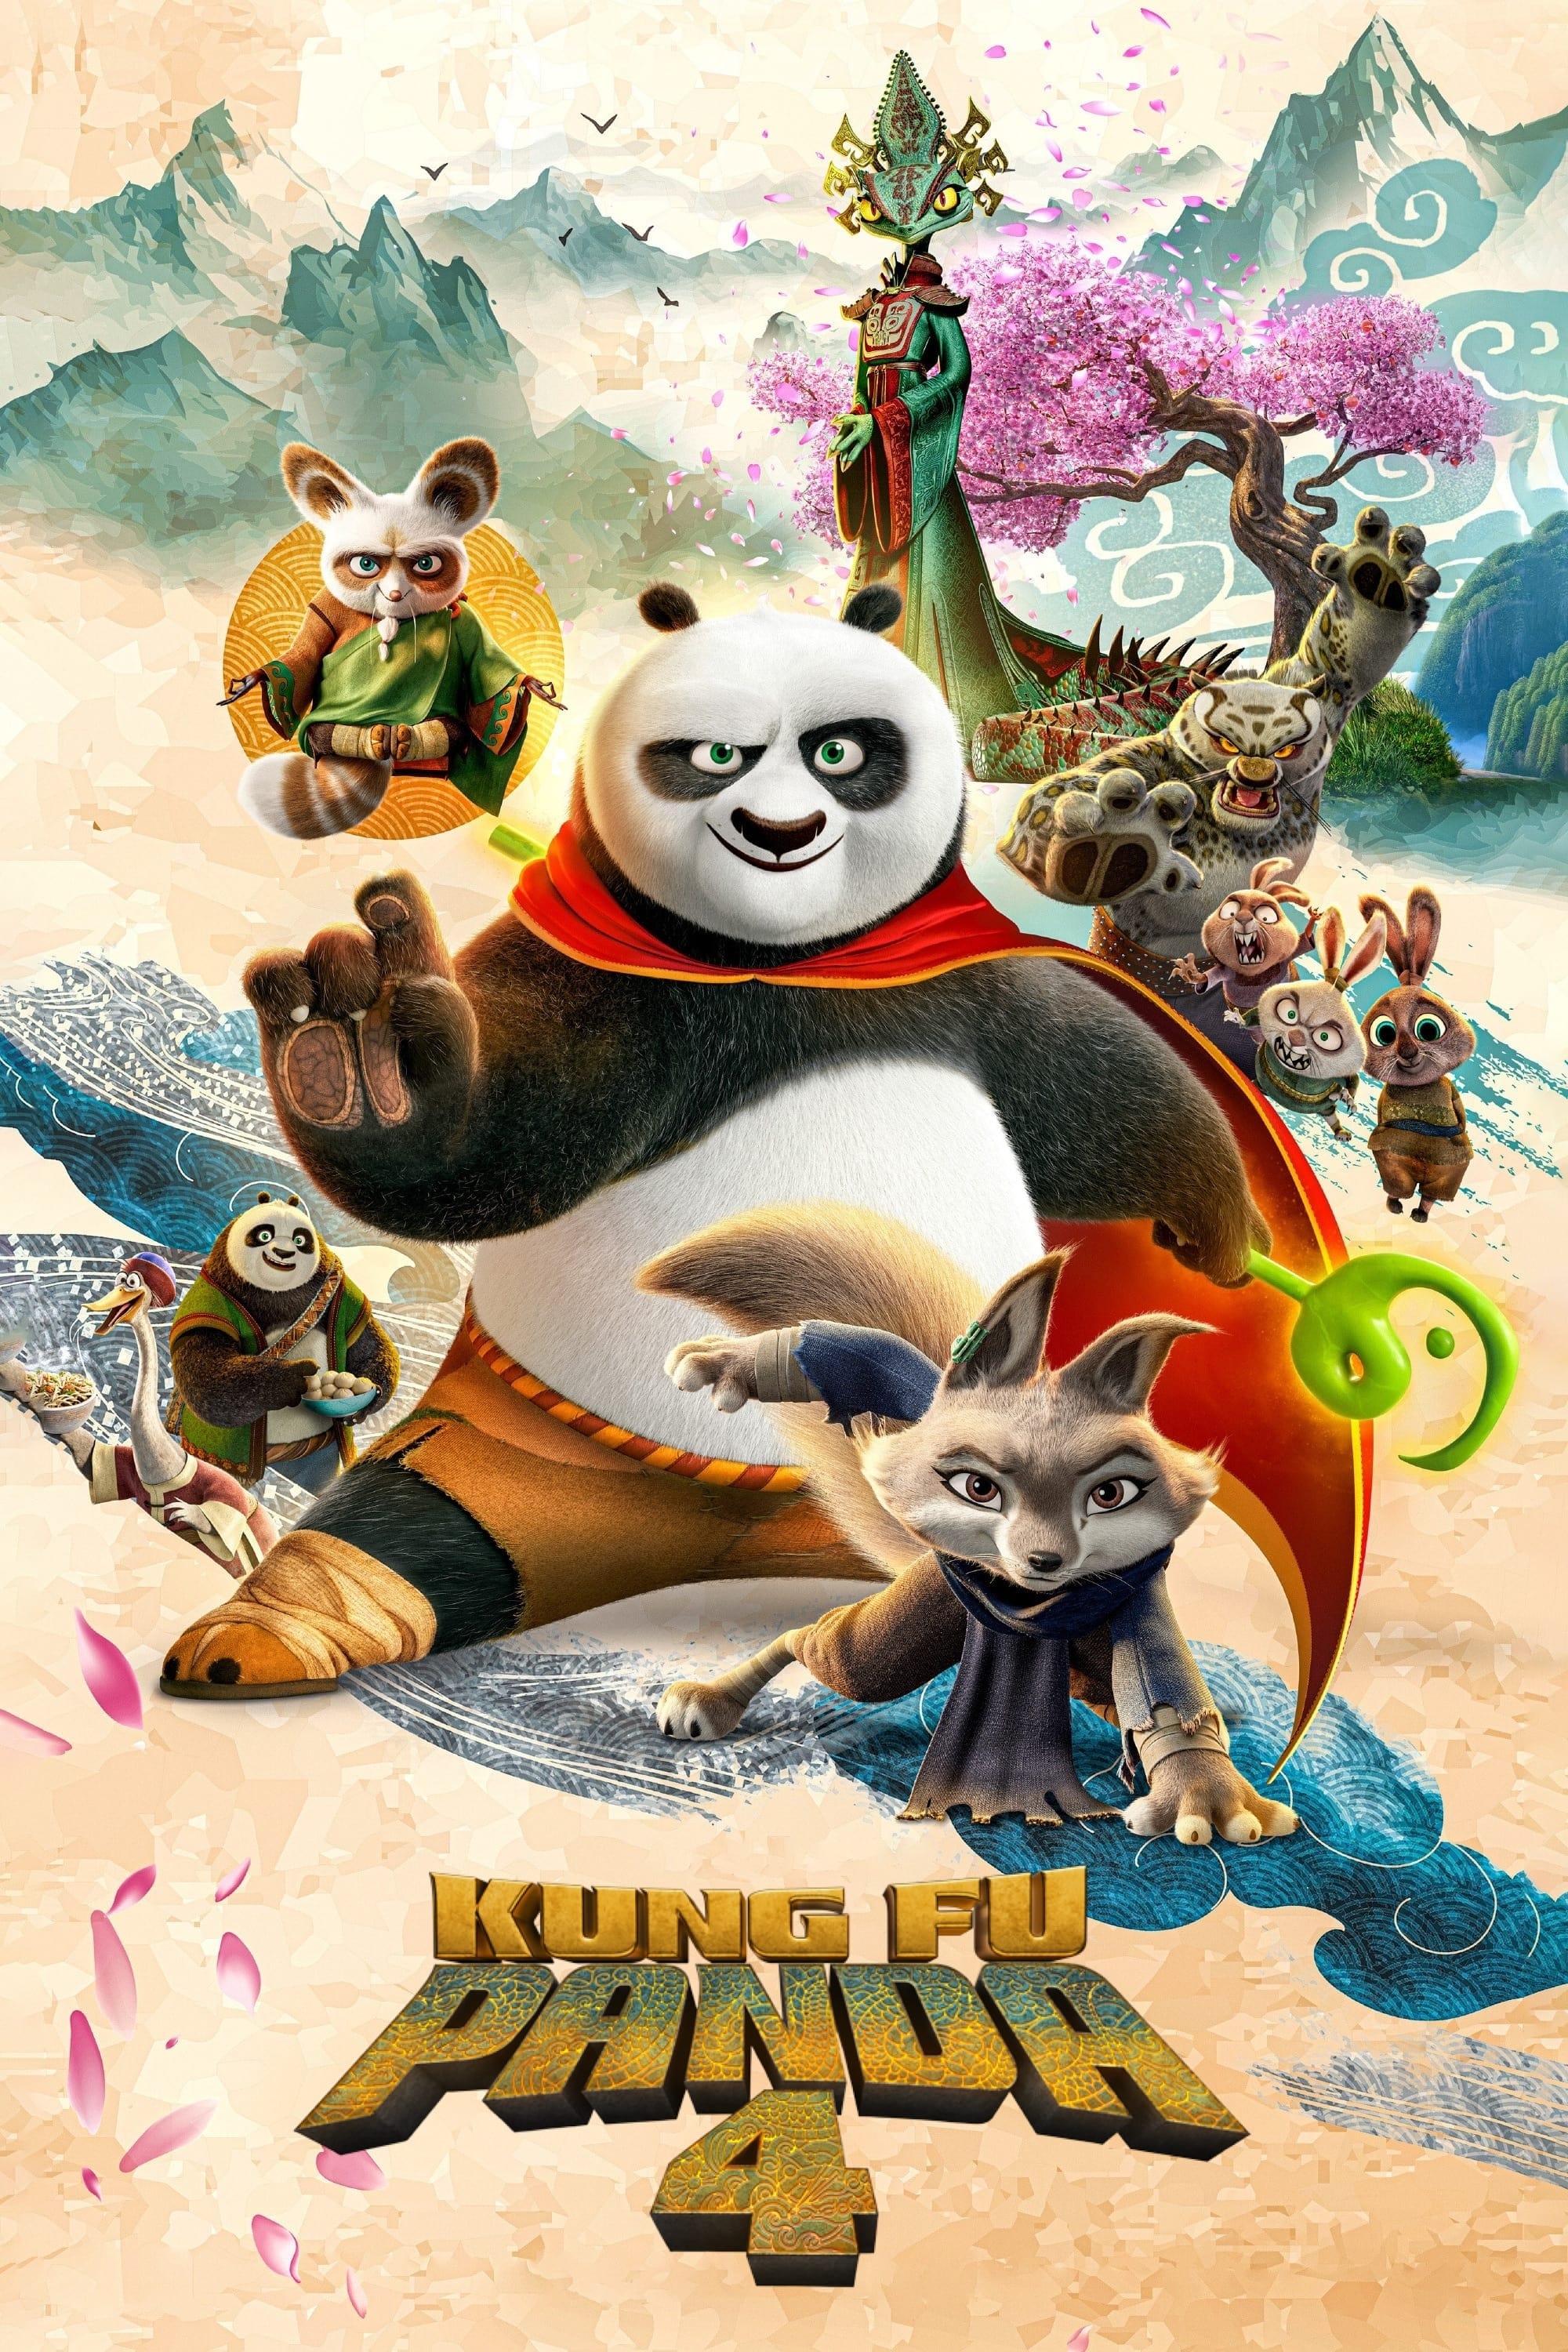 კუნგ–ფუ პანდა 4 / Kung Fu Panda 4